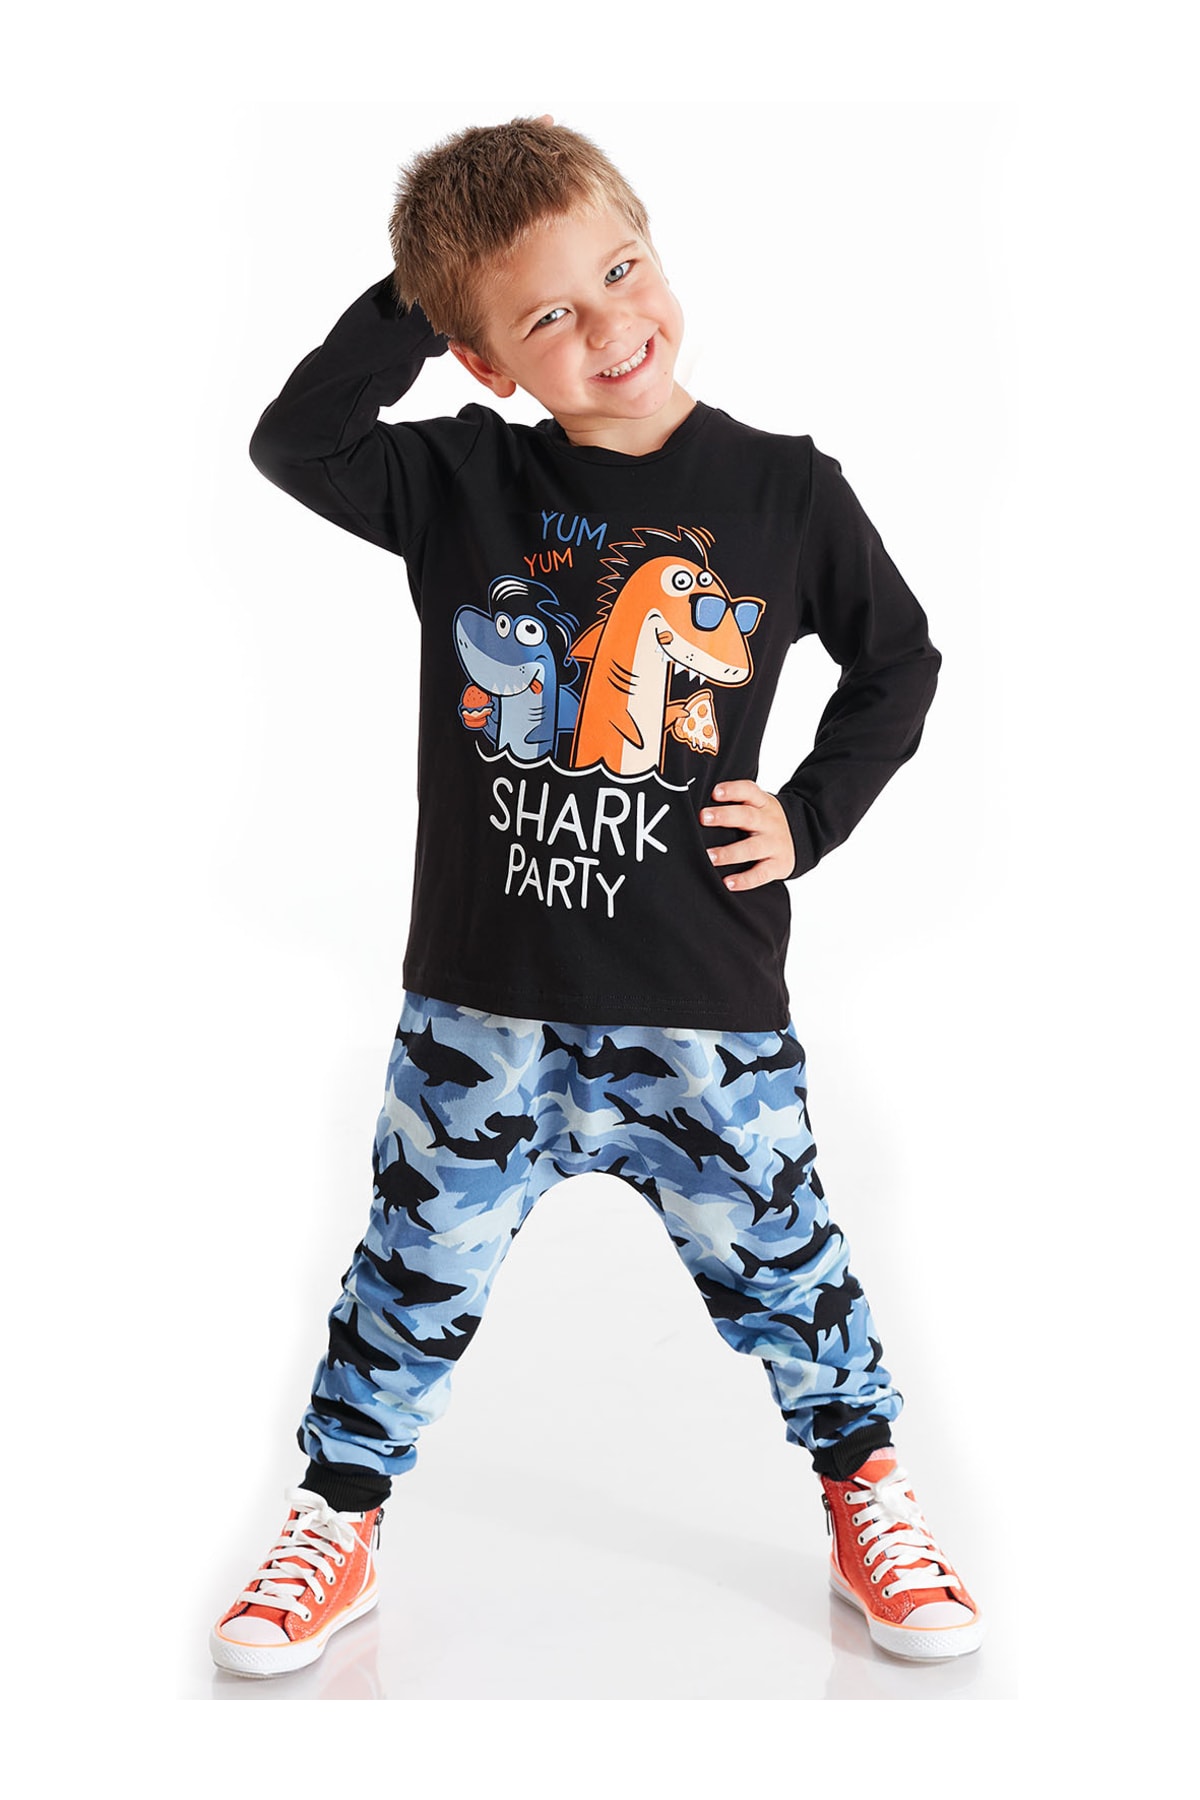 Levně Denokids Shark Party Boys T-shirt Pants Suit